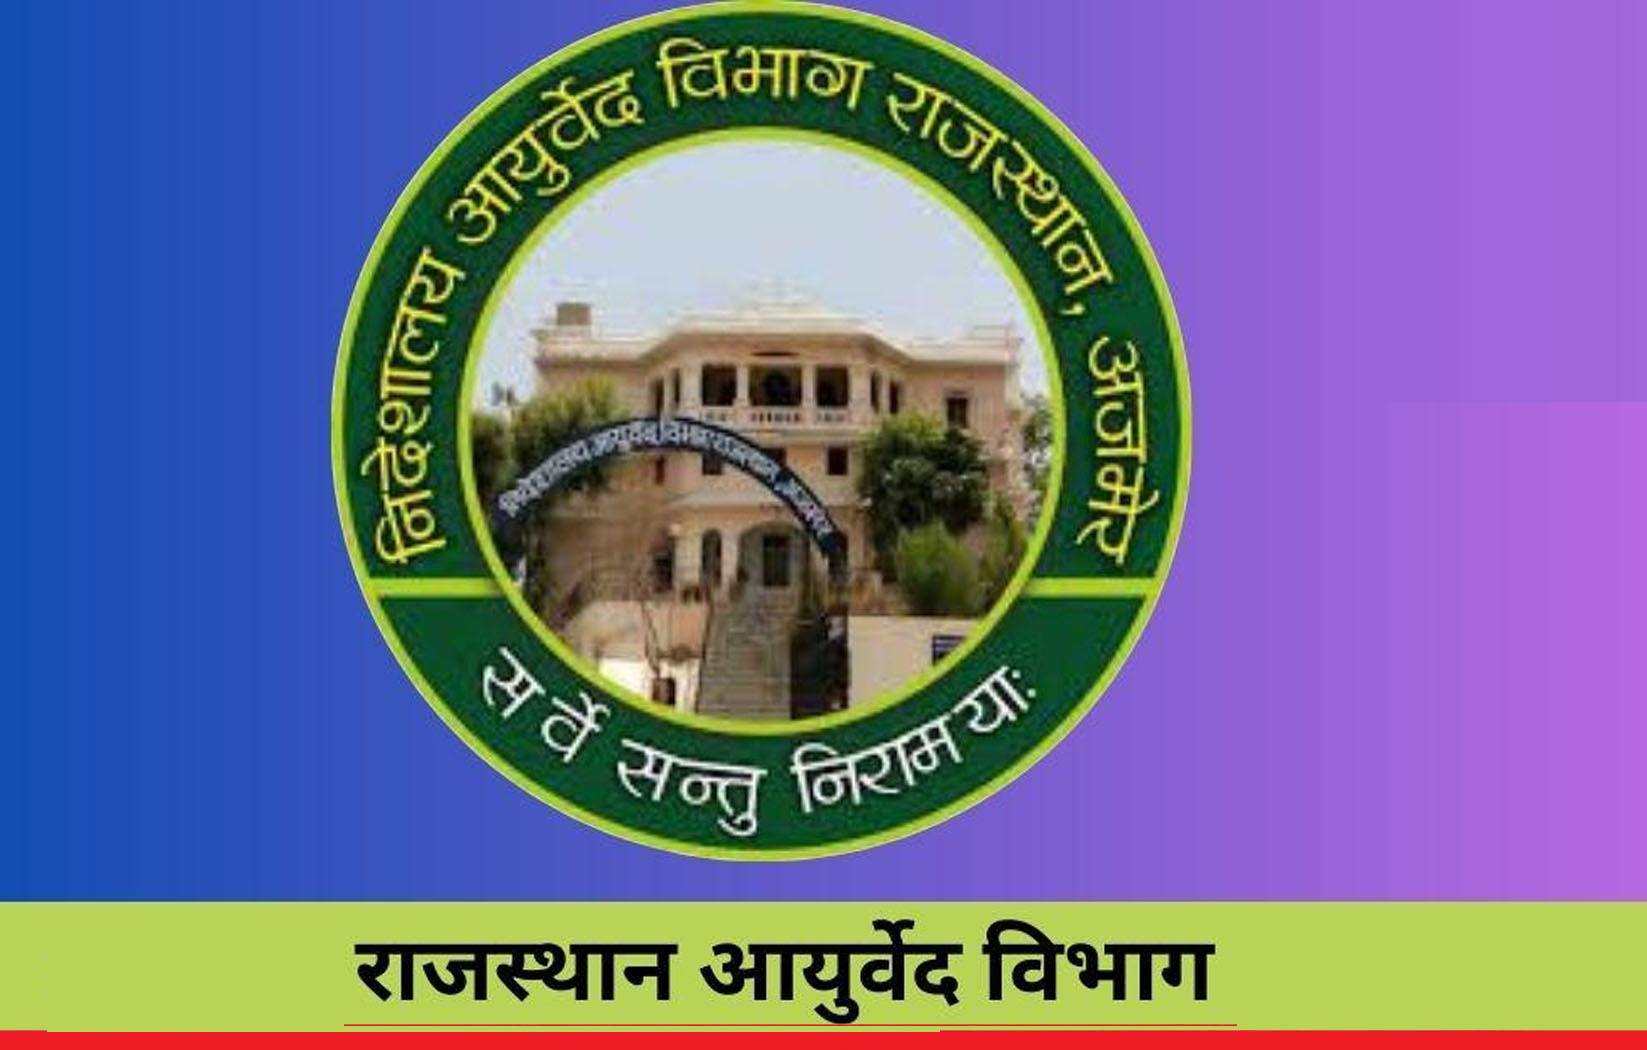 राजस्थान आयुर्वेद विभाग में निकली बंपर वैकेंसी, 10 जुलाई तक करें अप्लाई